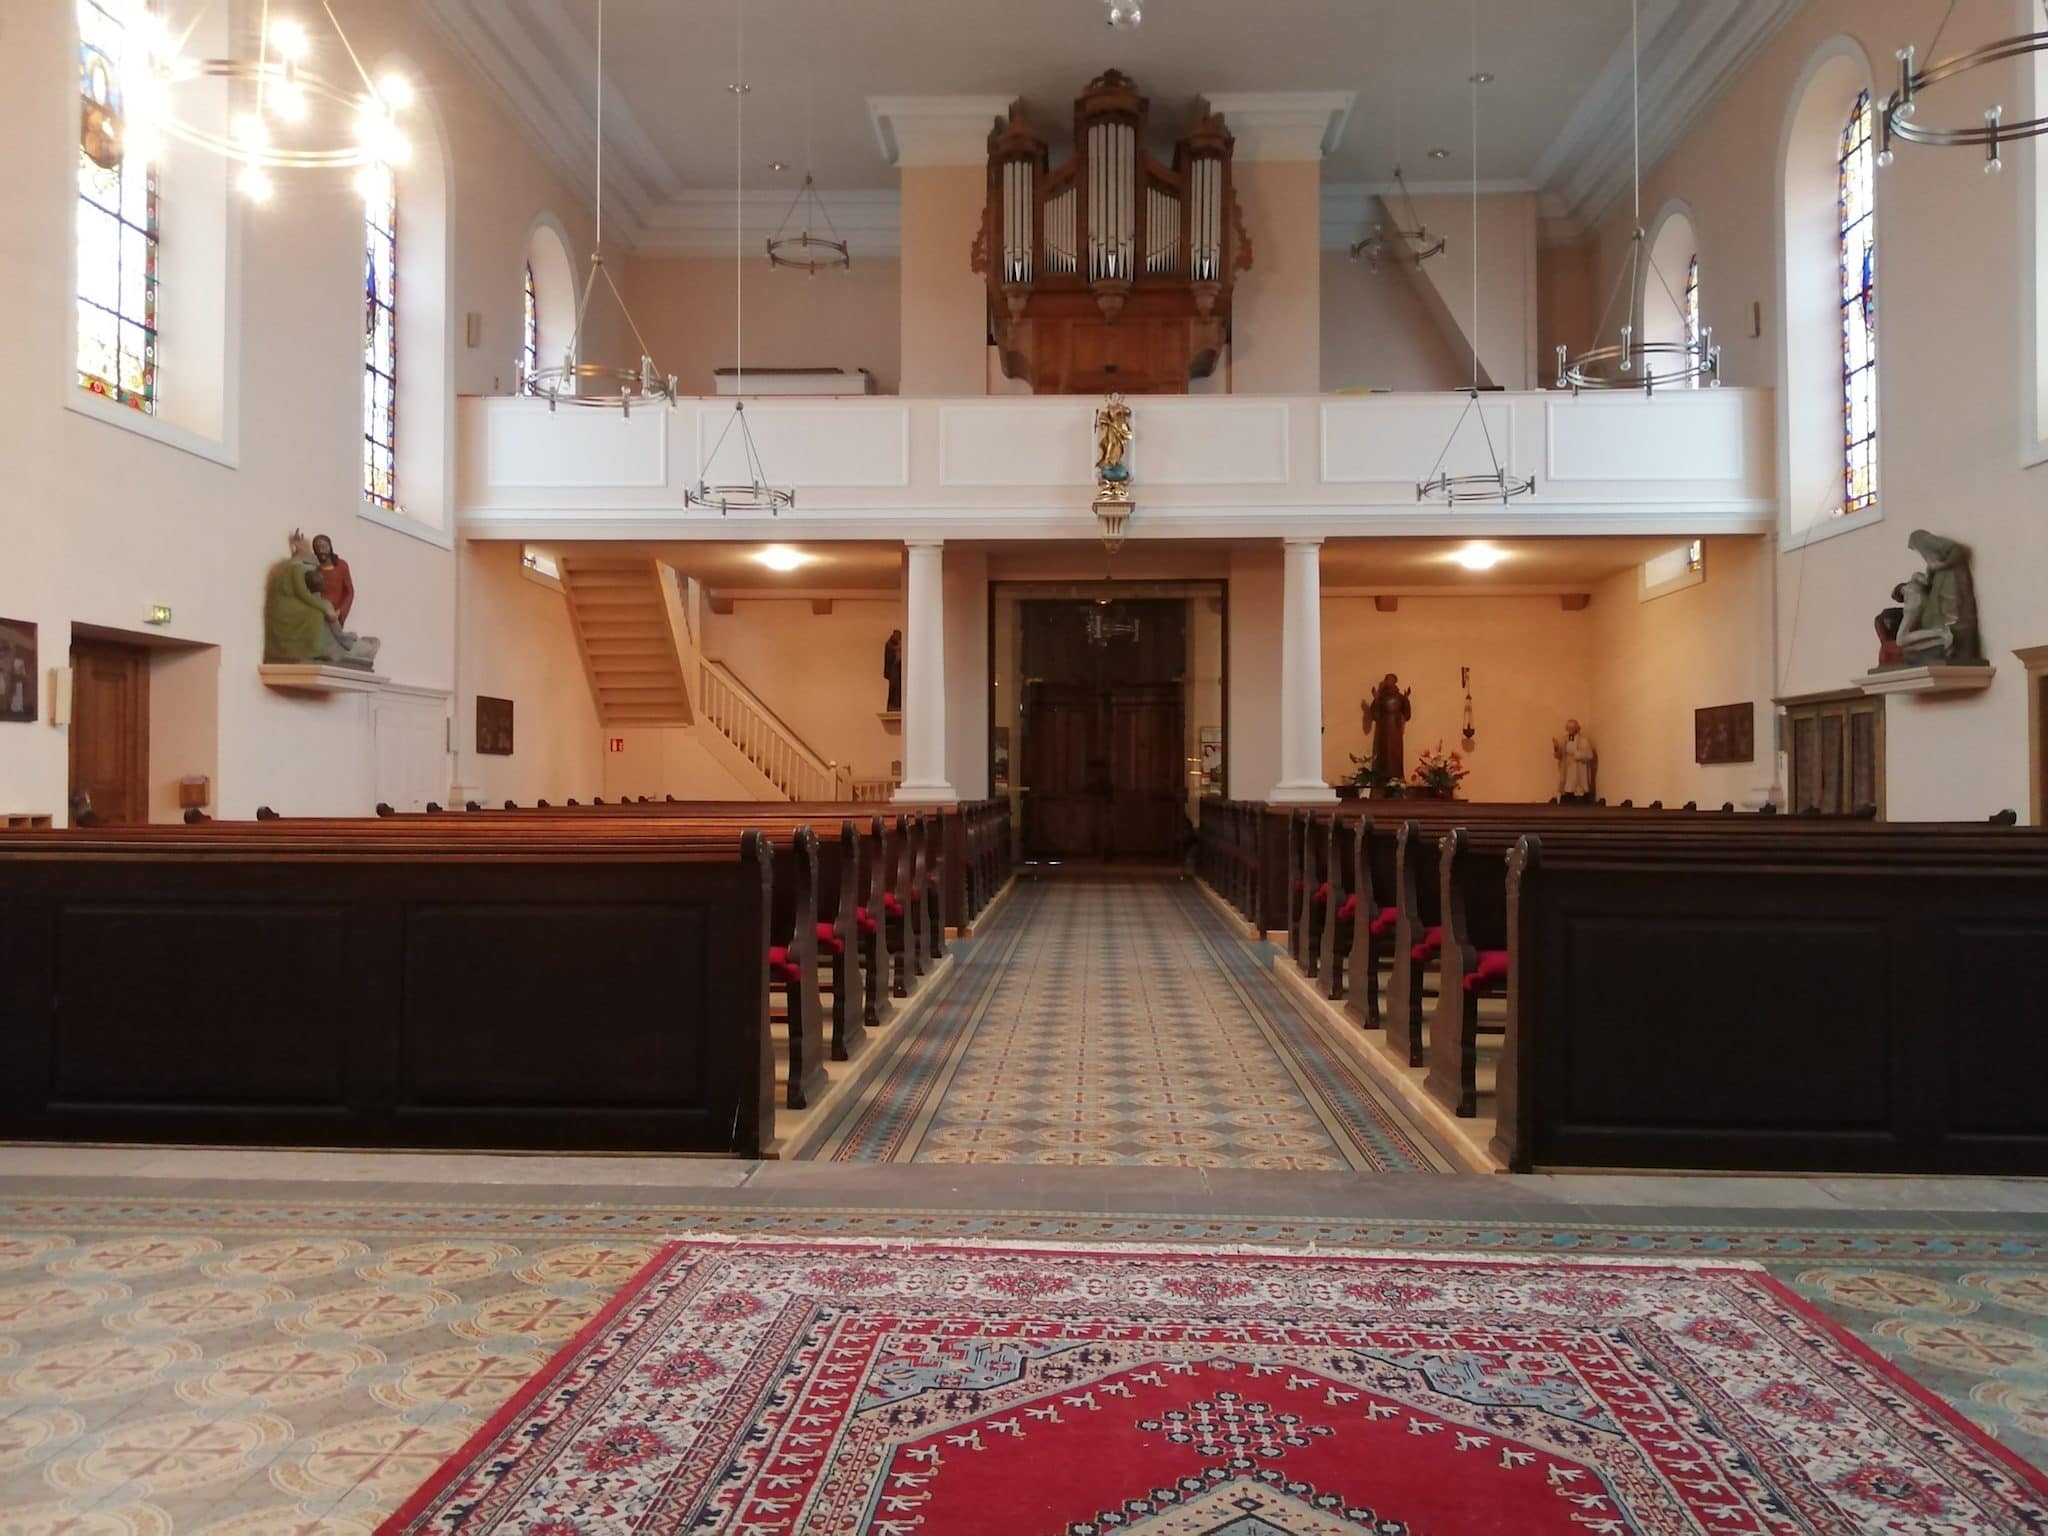 Dans 12 villages du Kochersberg, c'est désormais sans aucune assemblée que se déroulent les messes.